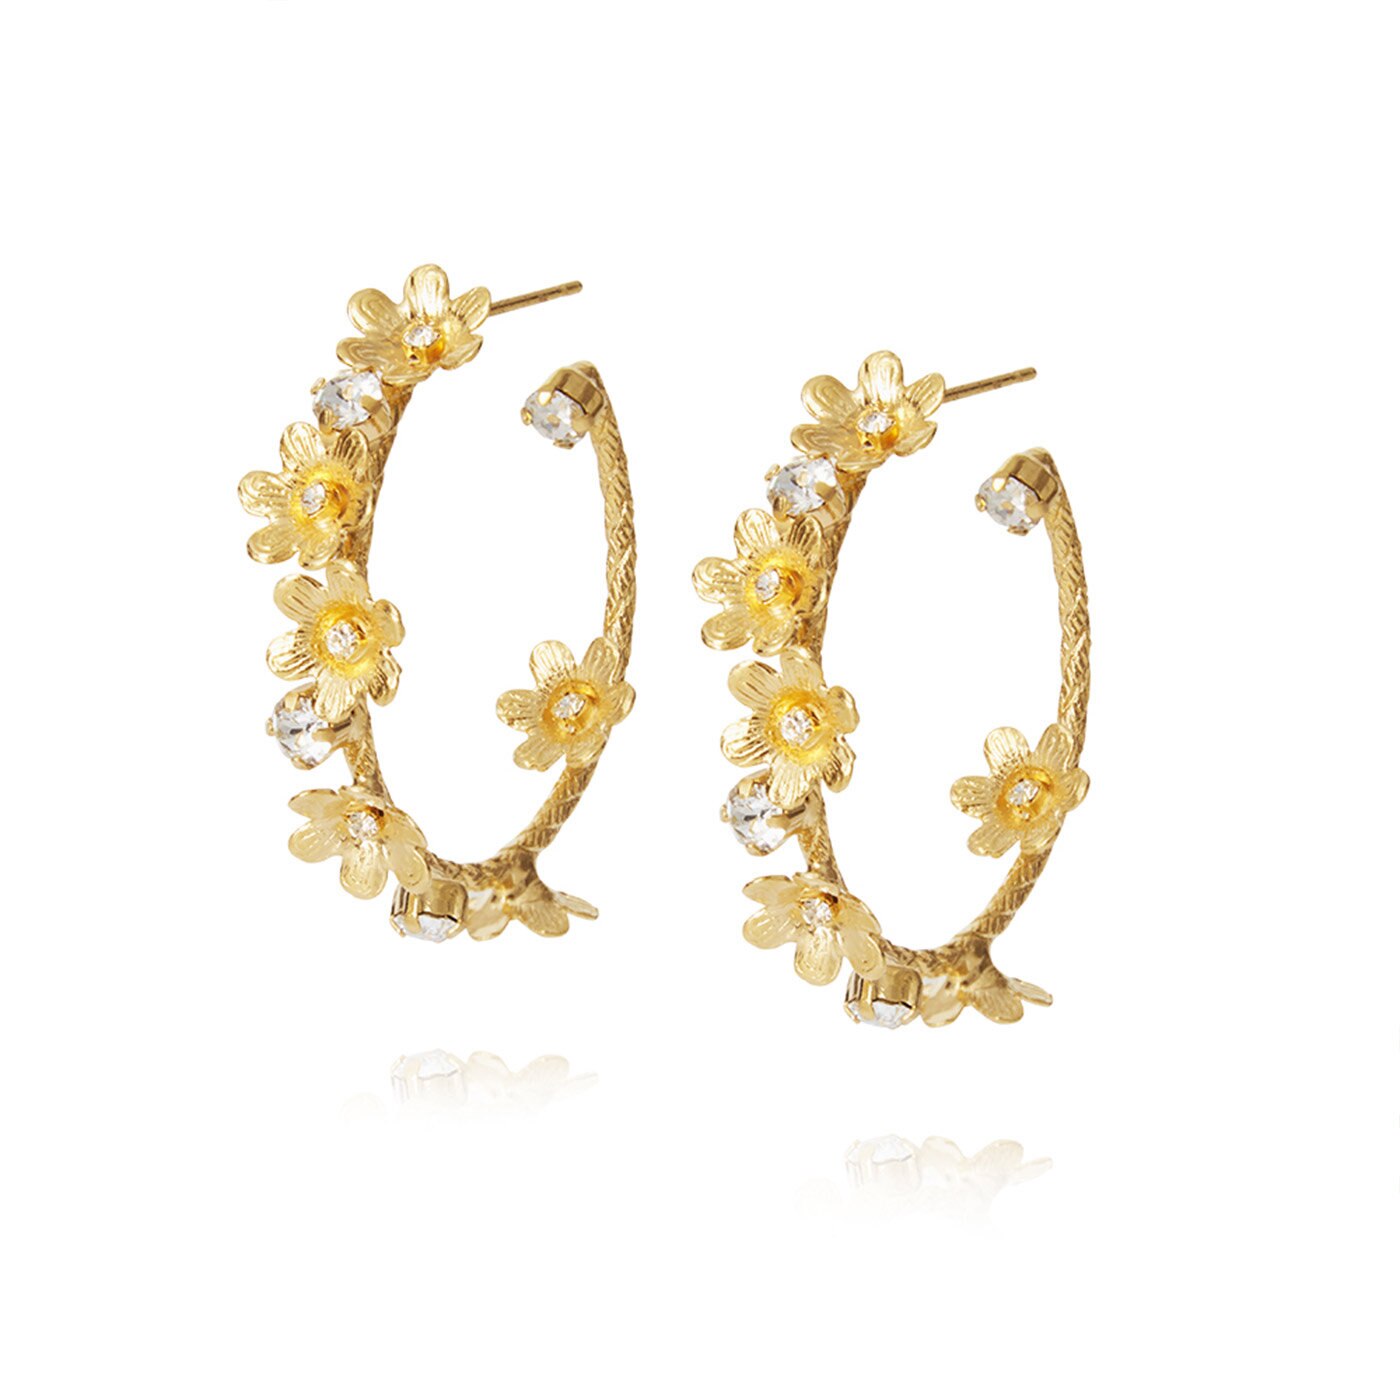 Laurel Earrings Gold / Crystal